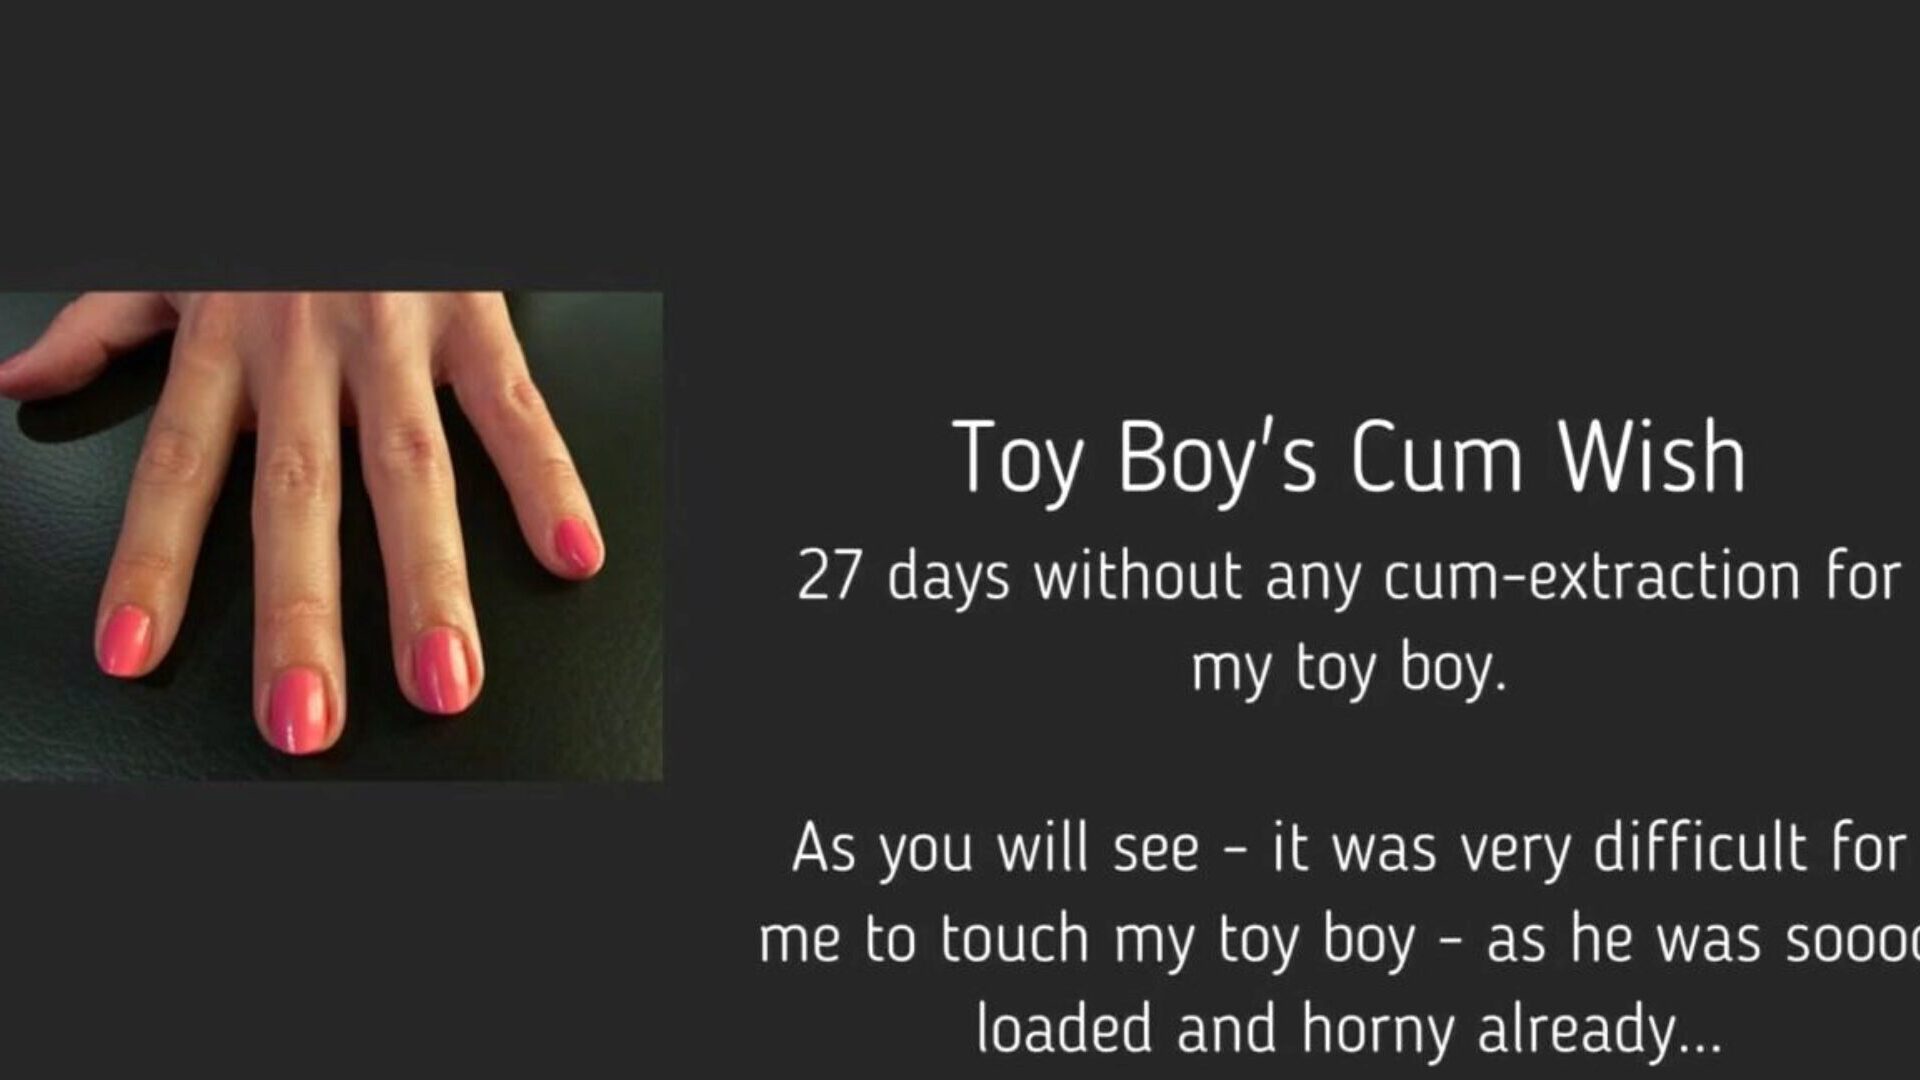 oyuncak oğlanın cum dilek: bedava femdom handjob hd porno videosu 95 oyuncak oğlanın cum dilek tüpü seks filmini xhamster'da ücretsiz izle, femdomun en seksi bevyiyle bel ami cum & tube çocuk hd porno film sahnesi gösterileri